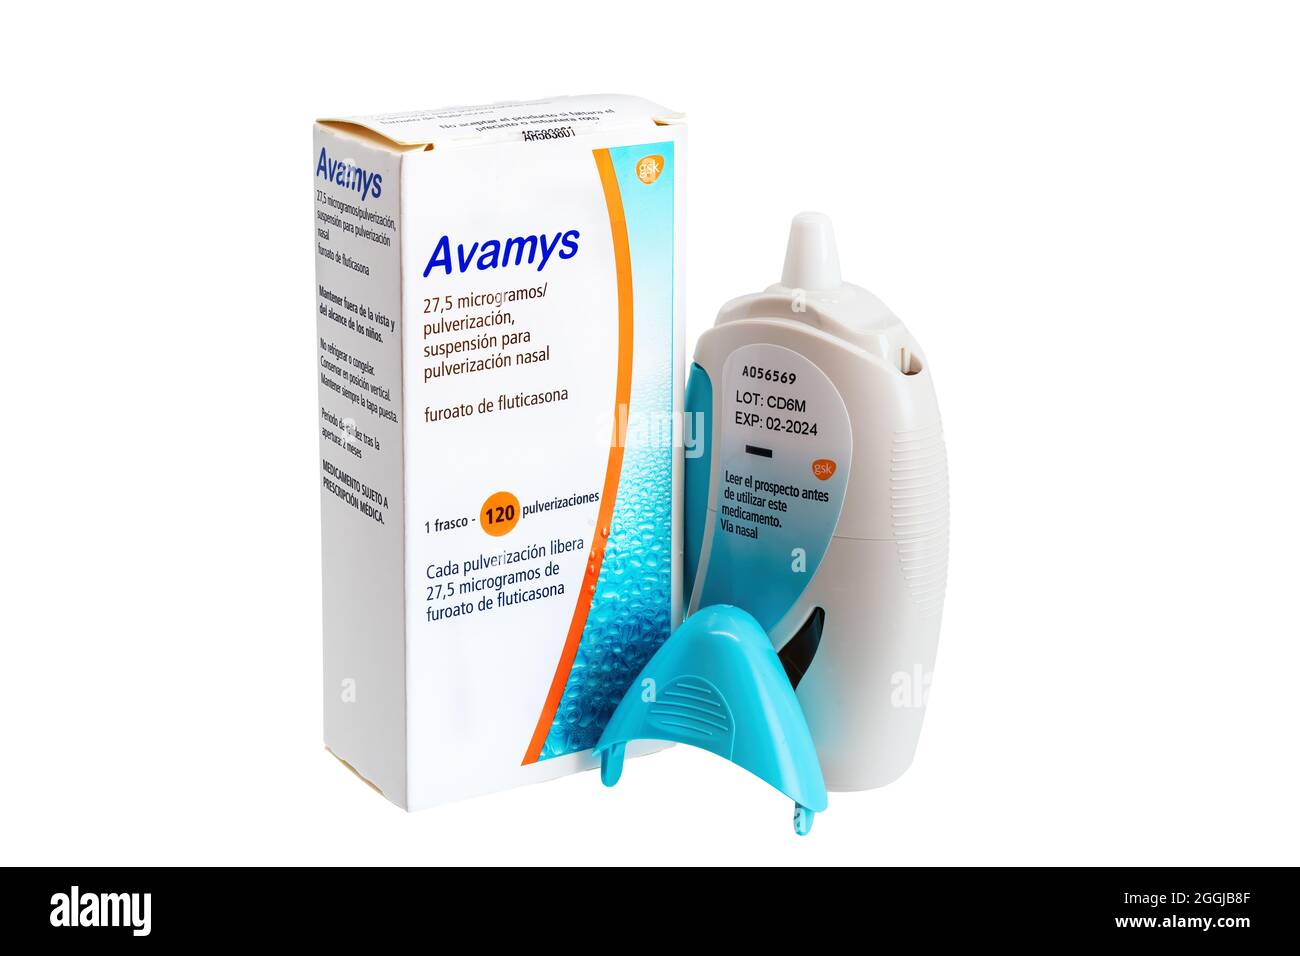 Huelva, Espagne - 28 août 2021 : boîte espagnole de furoate de fluticasone  de marque Avamys. Il s'agit d'un spray nasal stéroïdien pour les symptômes  du rhume causés par les allergi Photo